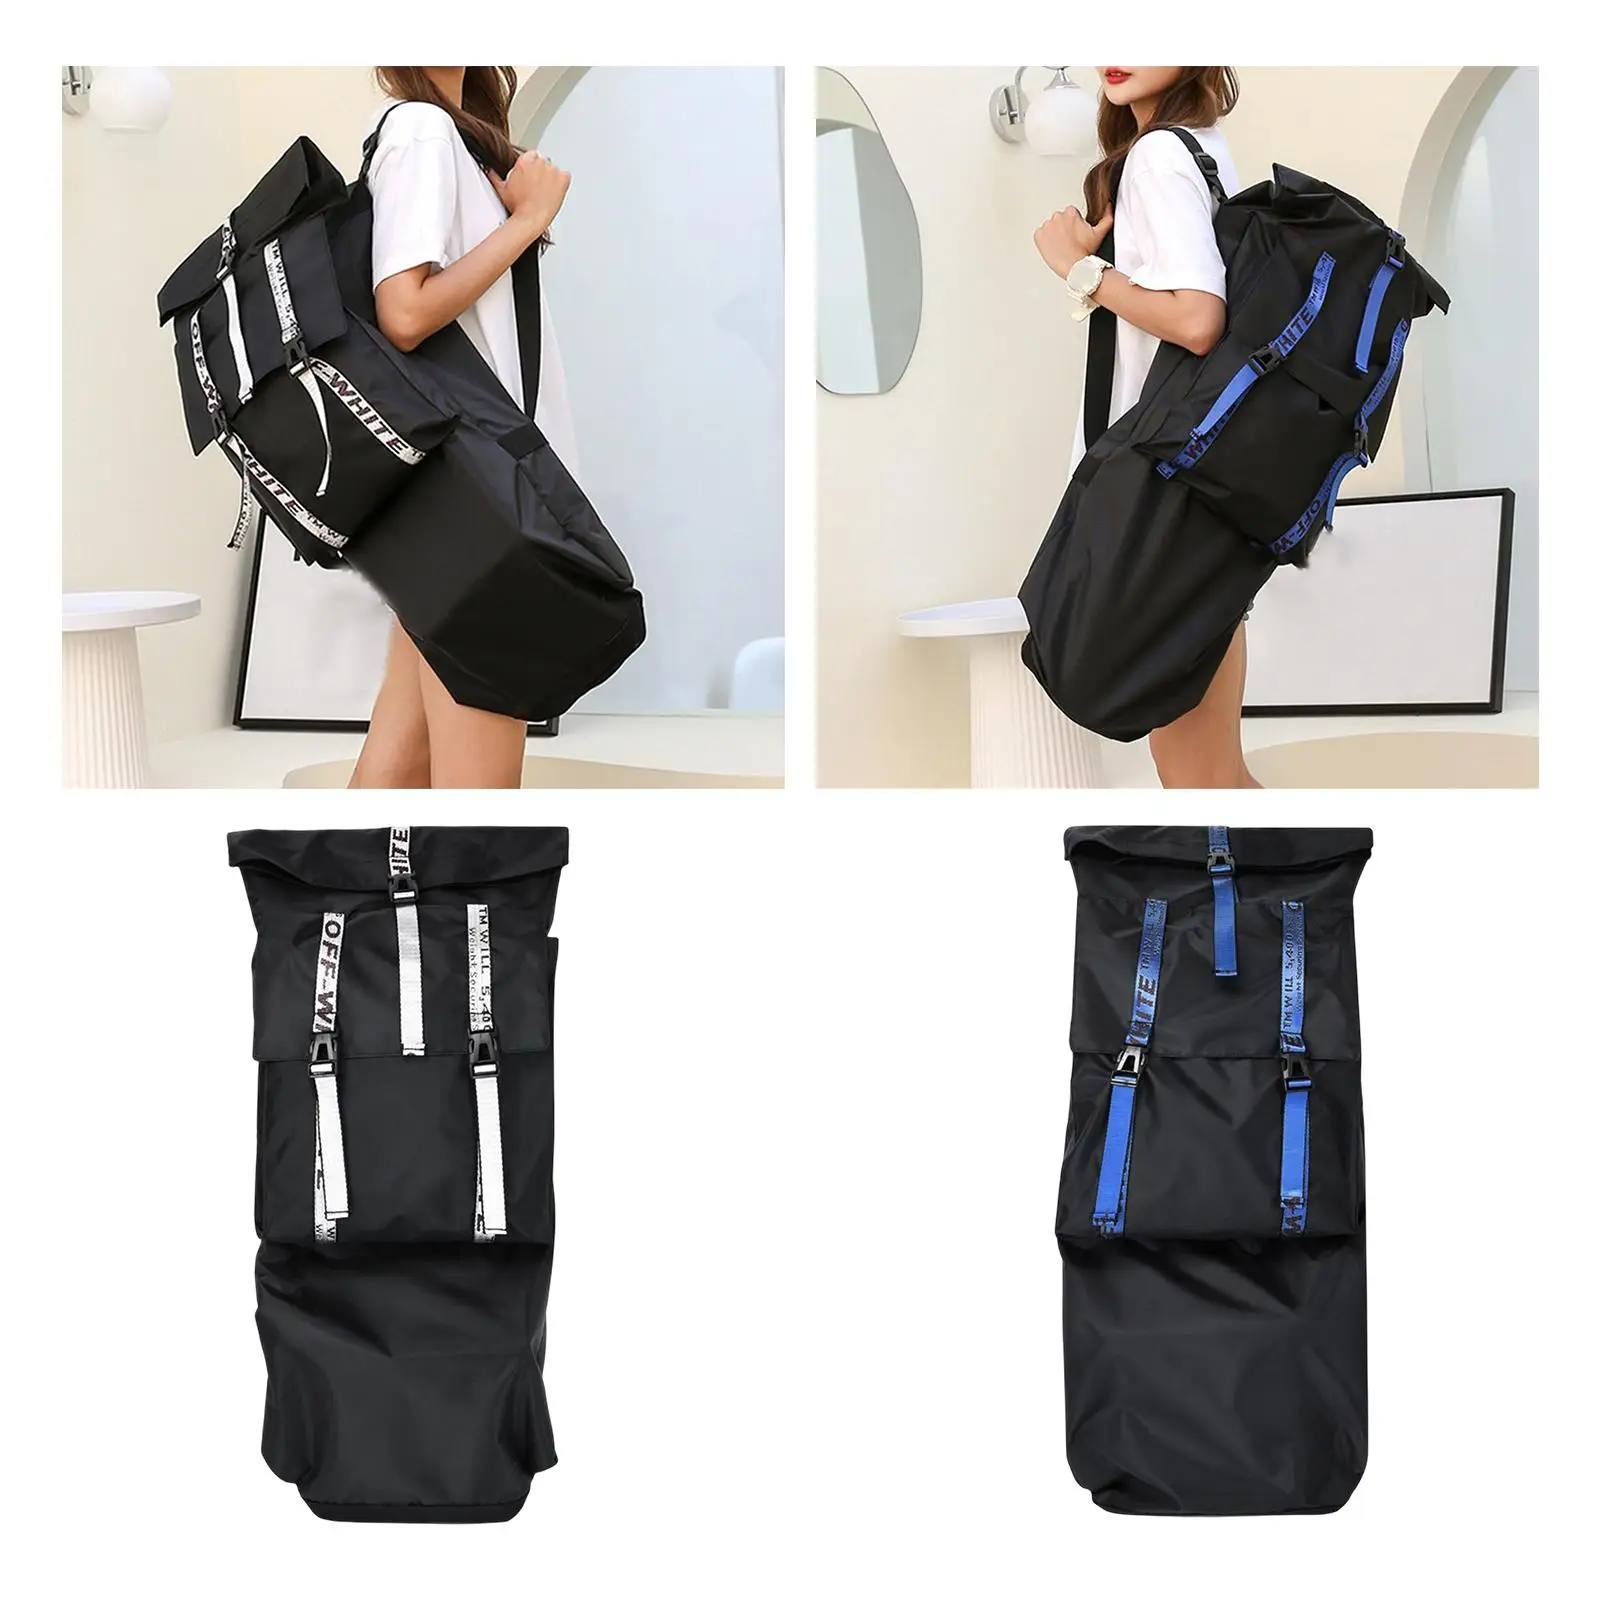 Skateboard Bag with Adjustable Shoulder Strap Water Resistant Storage Skateboard Backpack Longboard Cover Case for Unisex Kids